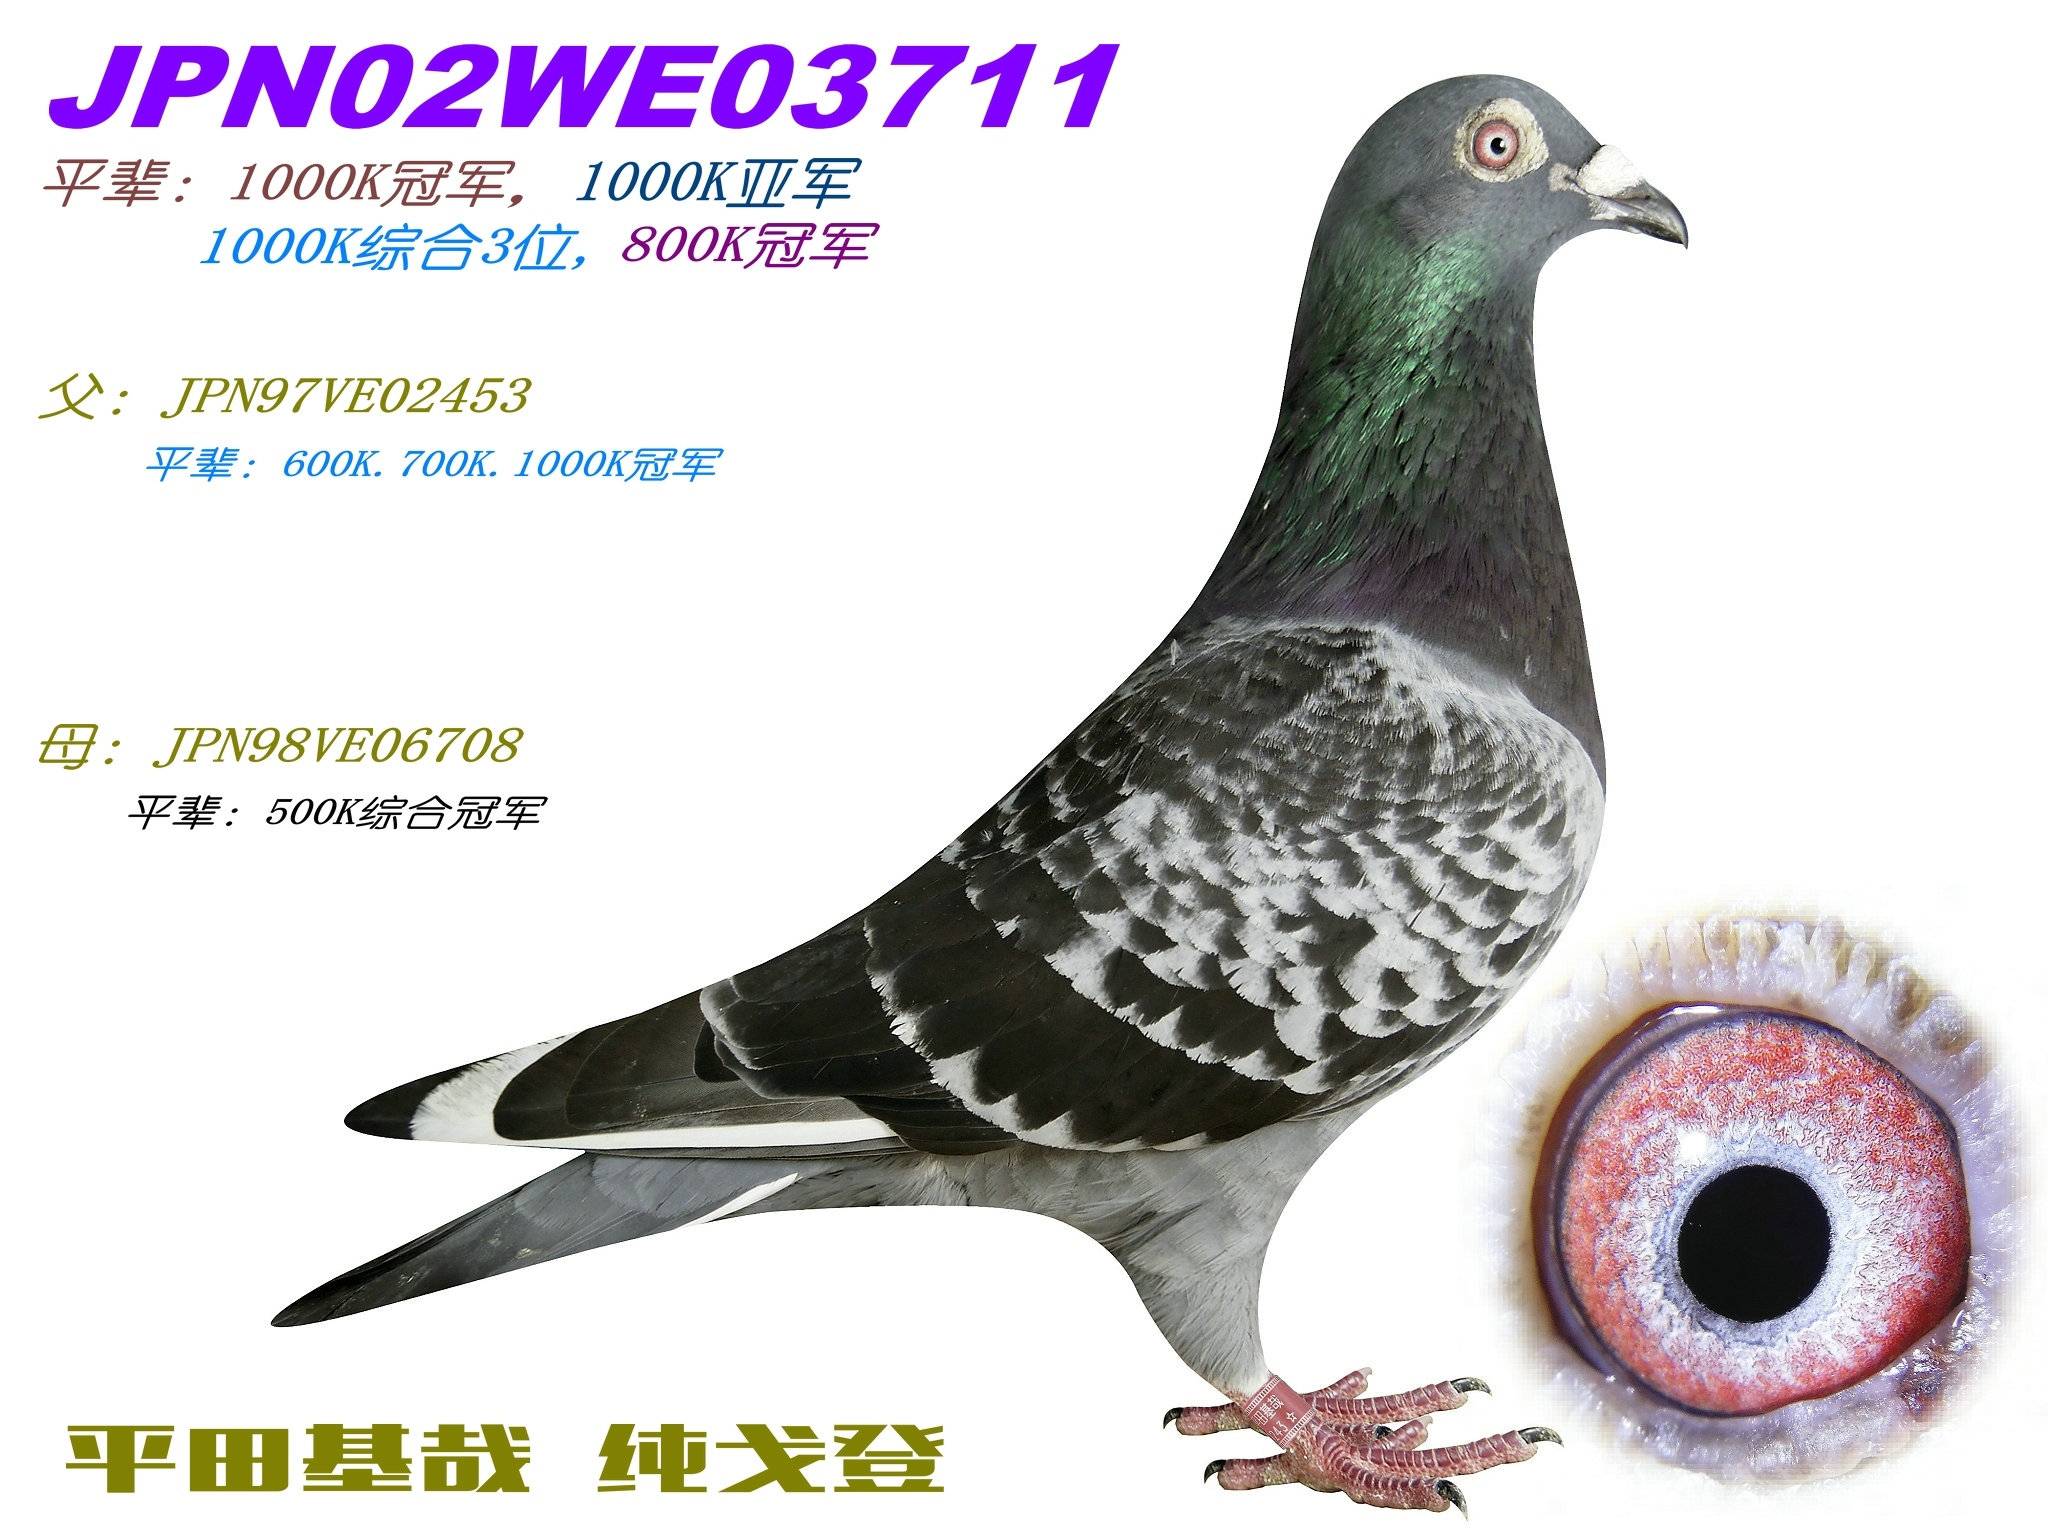 台湾戈登鸽系图片